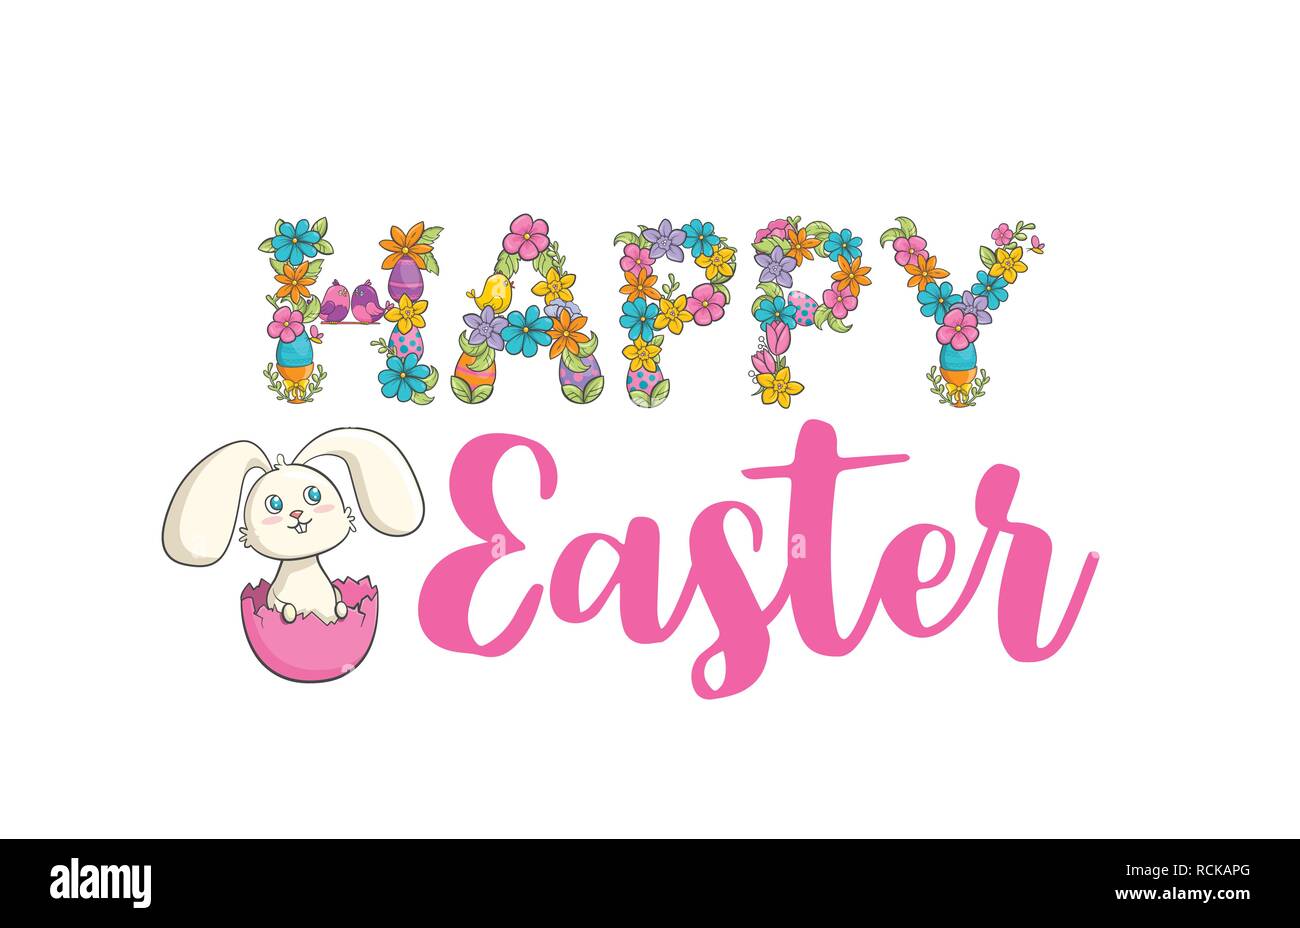 Easter Christian church festival card with cute bunny Stock Vector